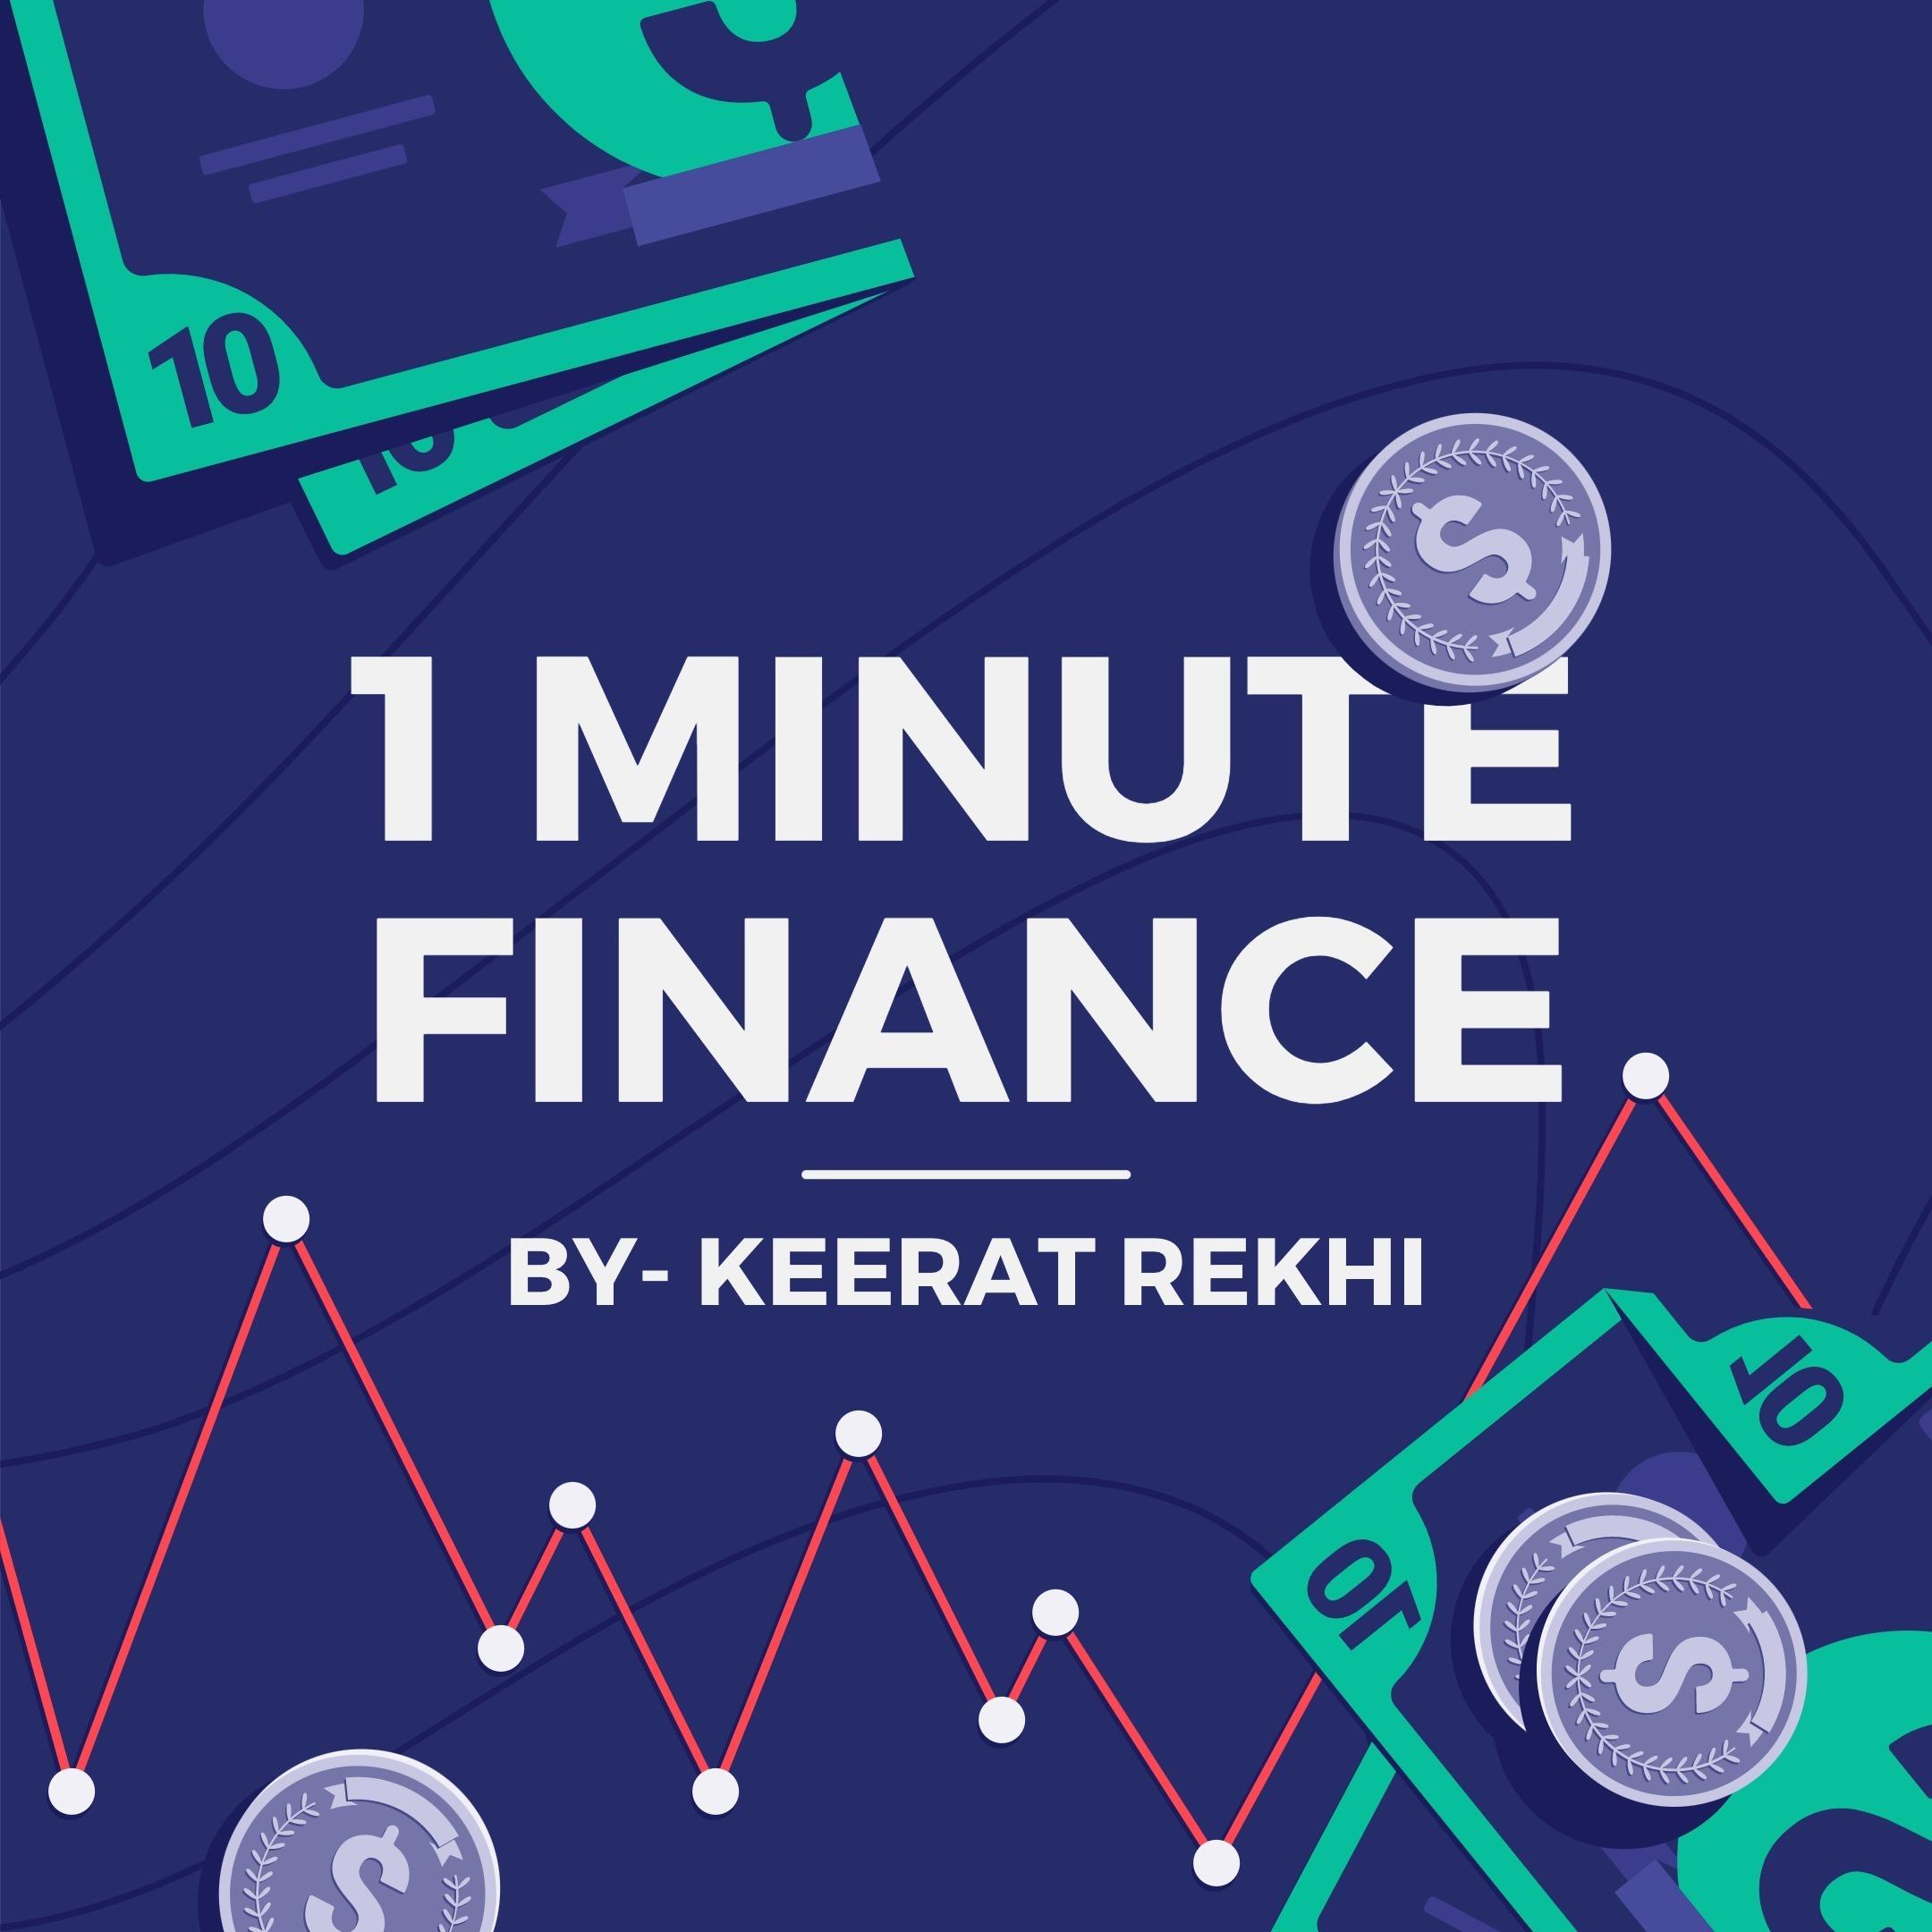 1 Minute Finance